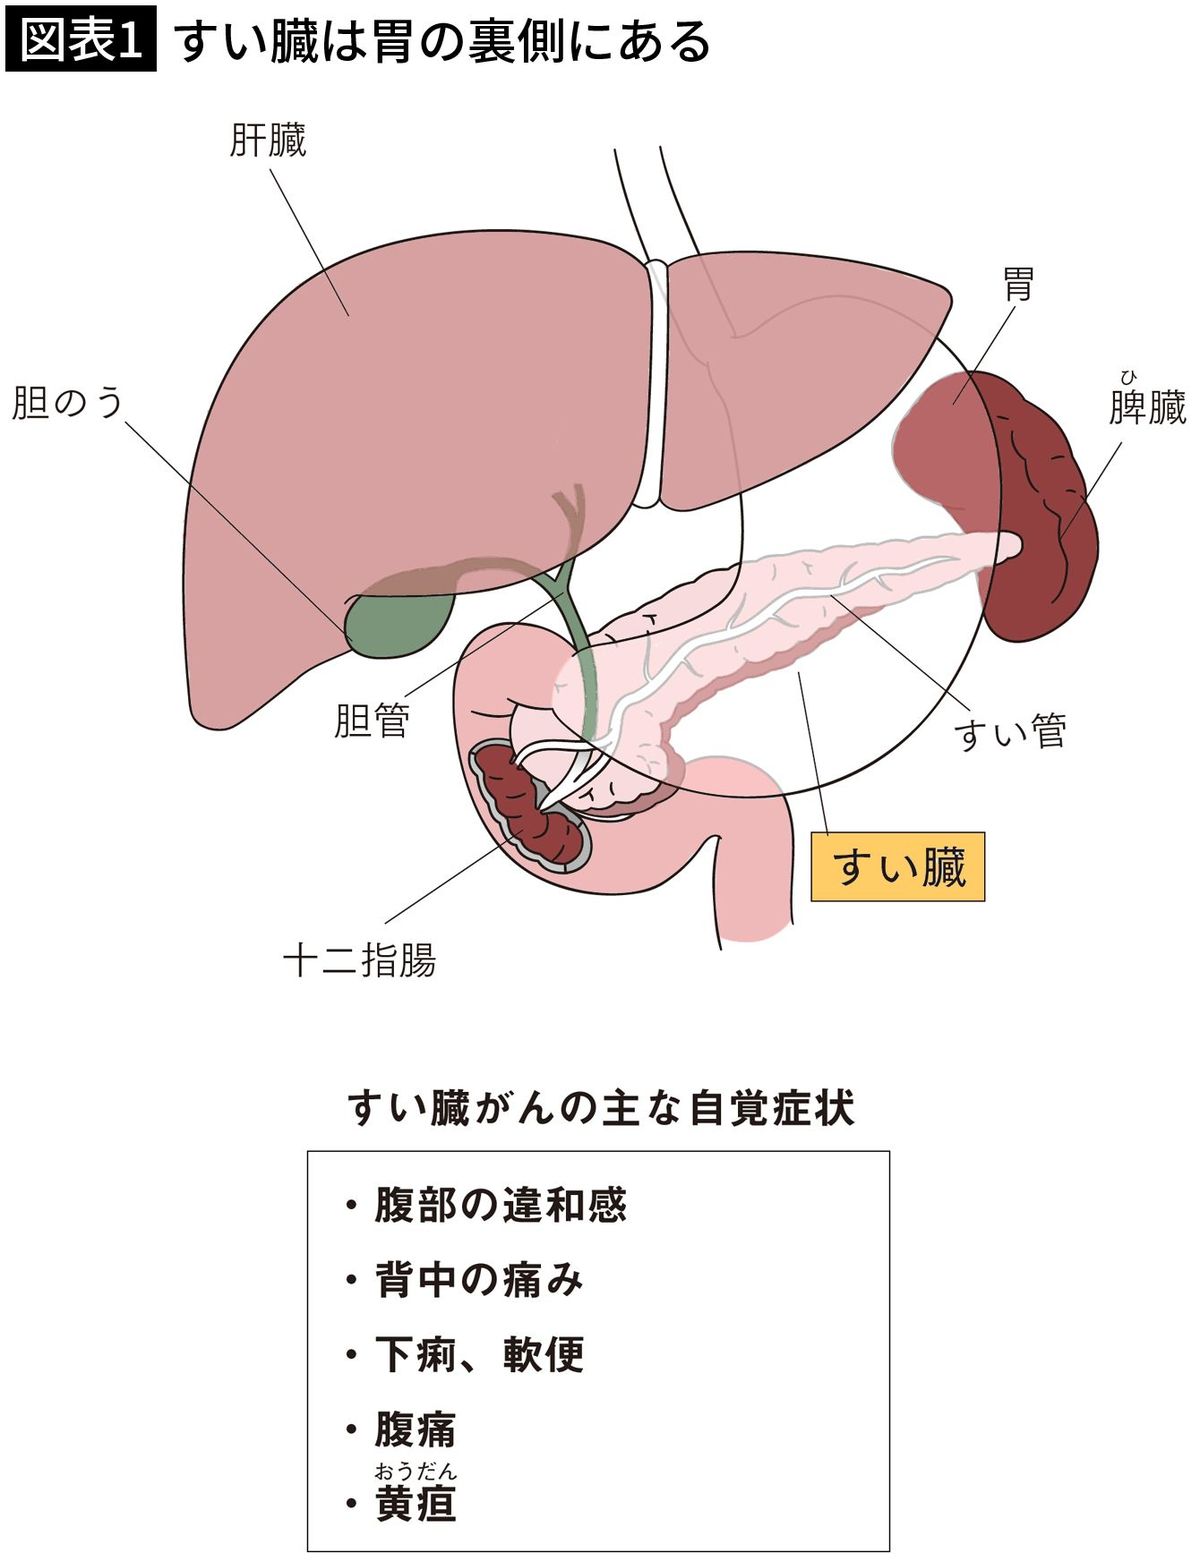 【図表1】すい臓は胃の裏側にある